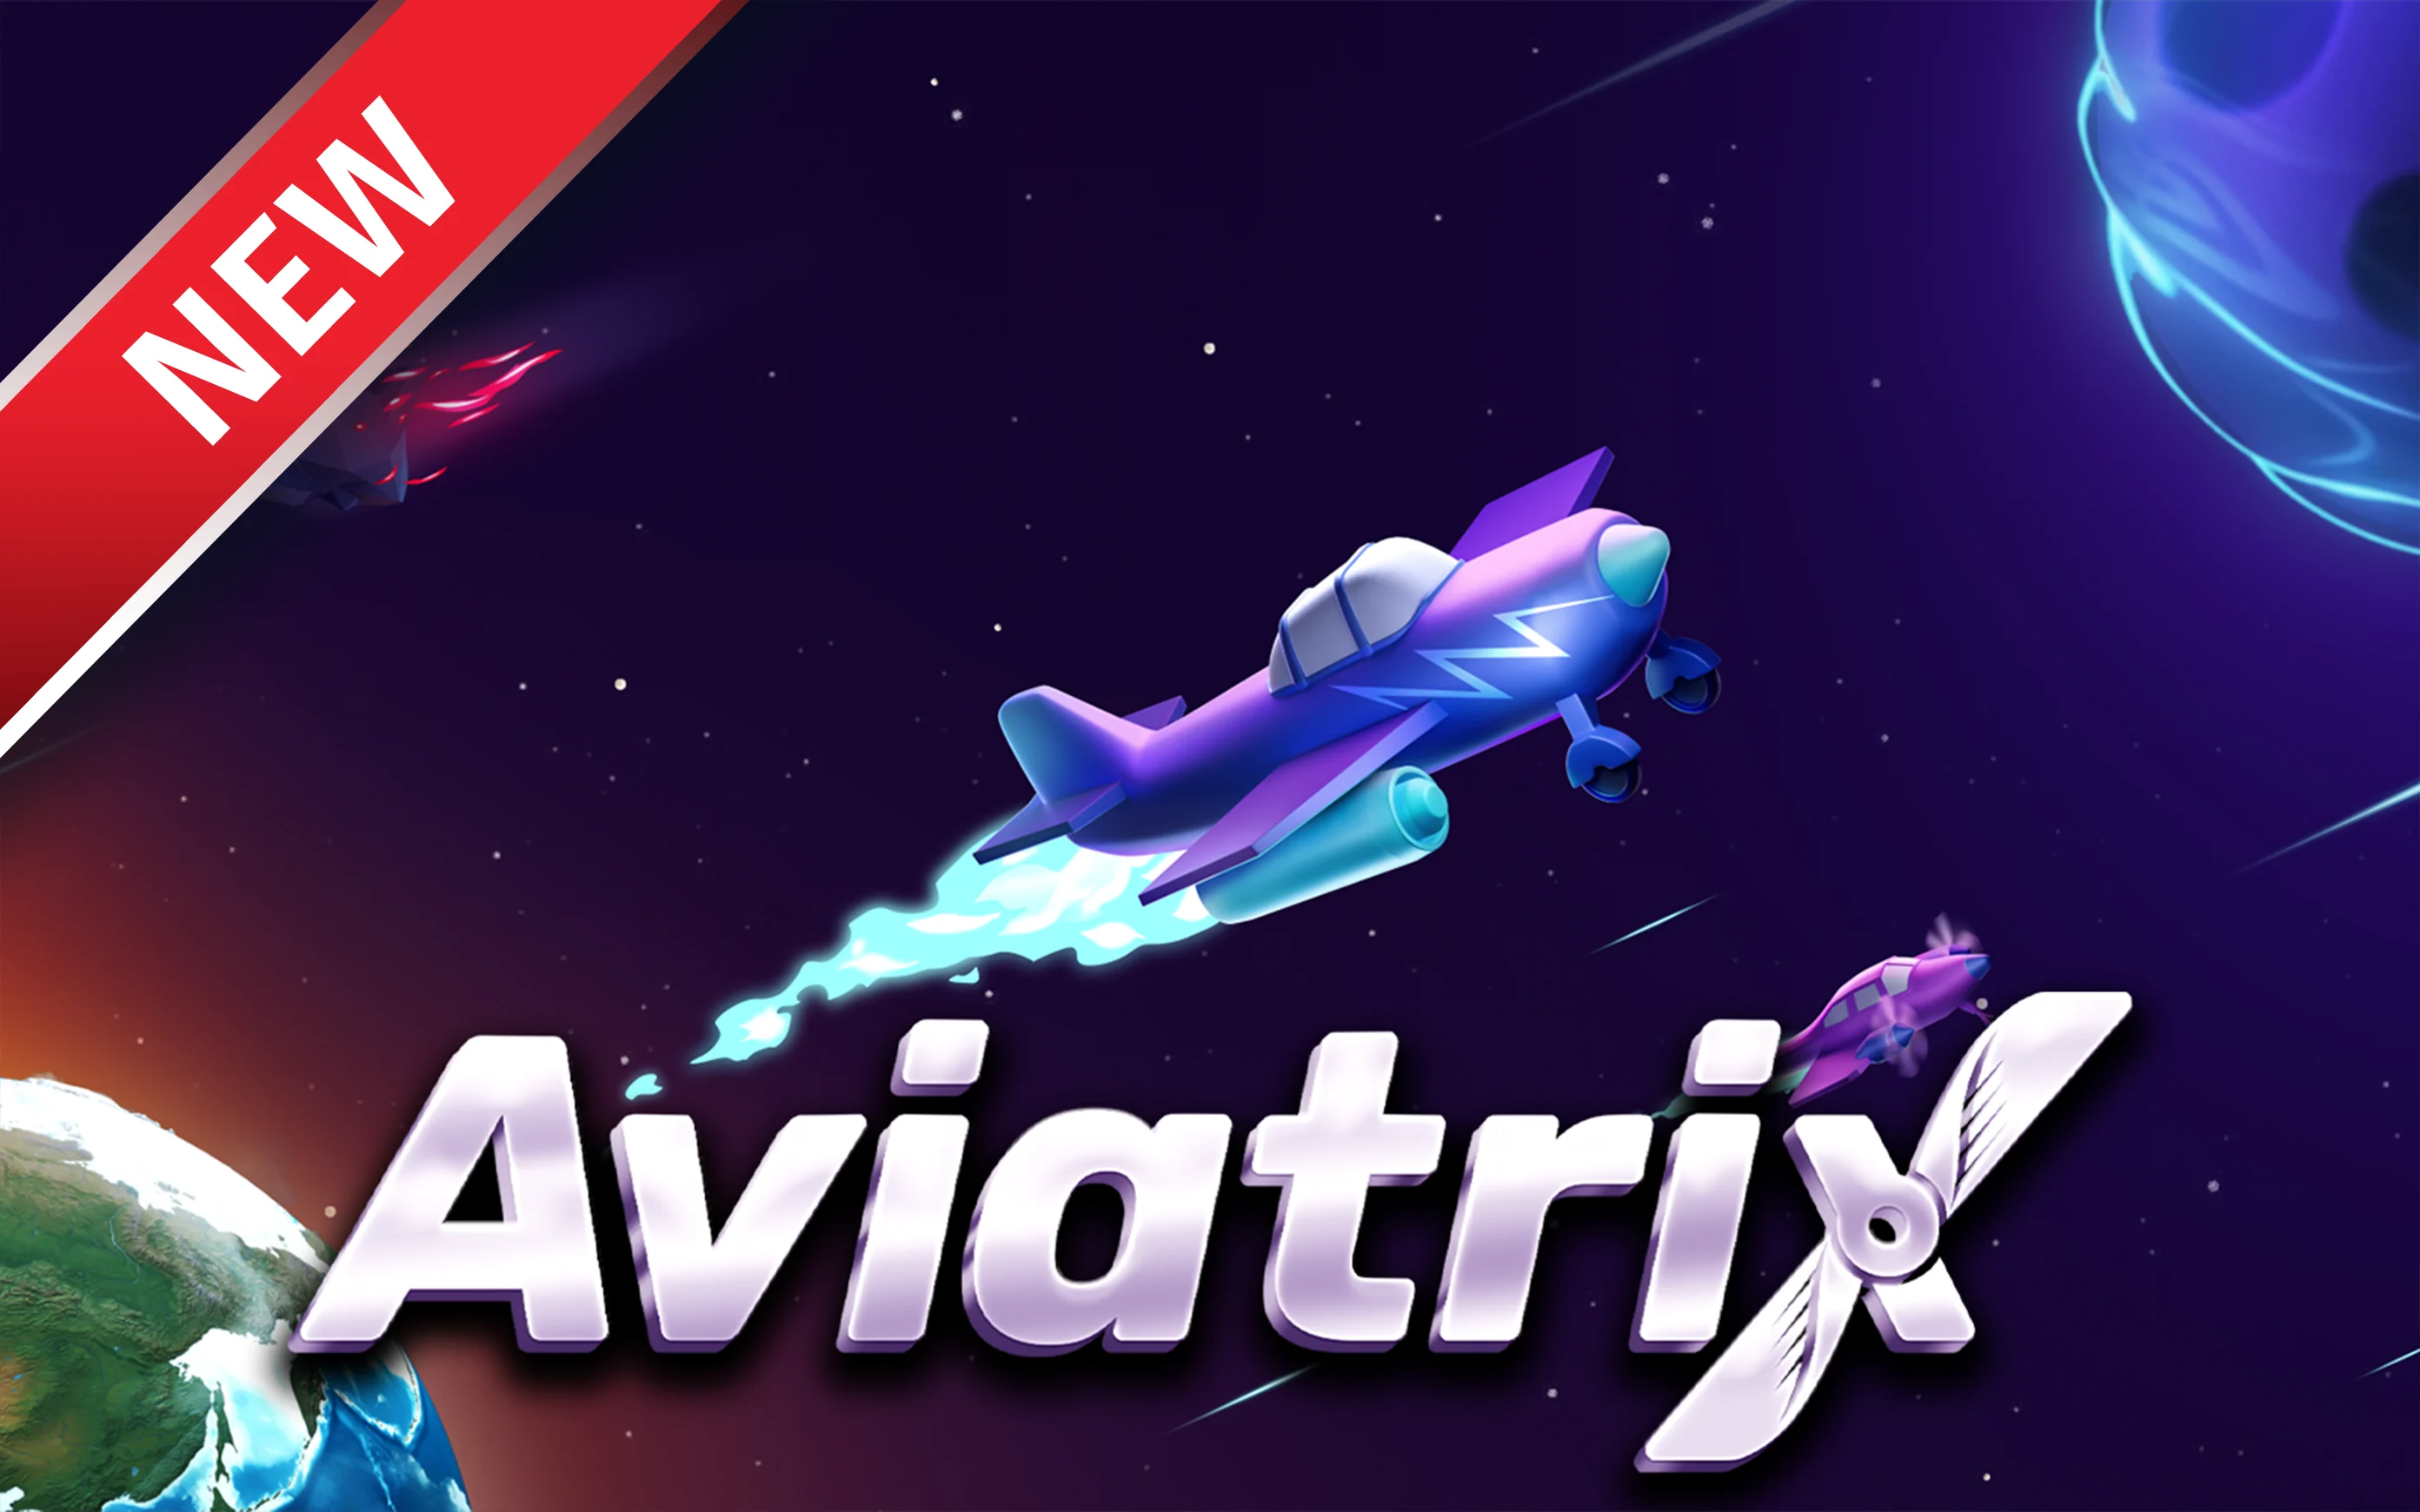 Play Aviatrix on Starcasino.be online casino